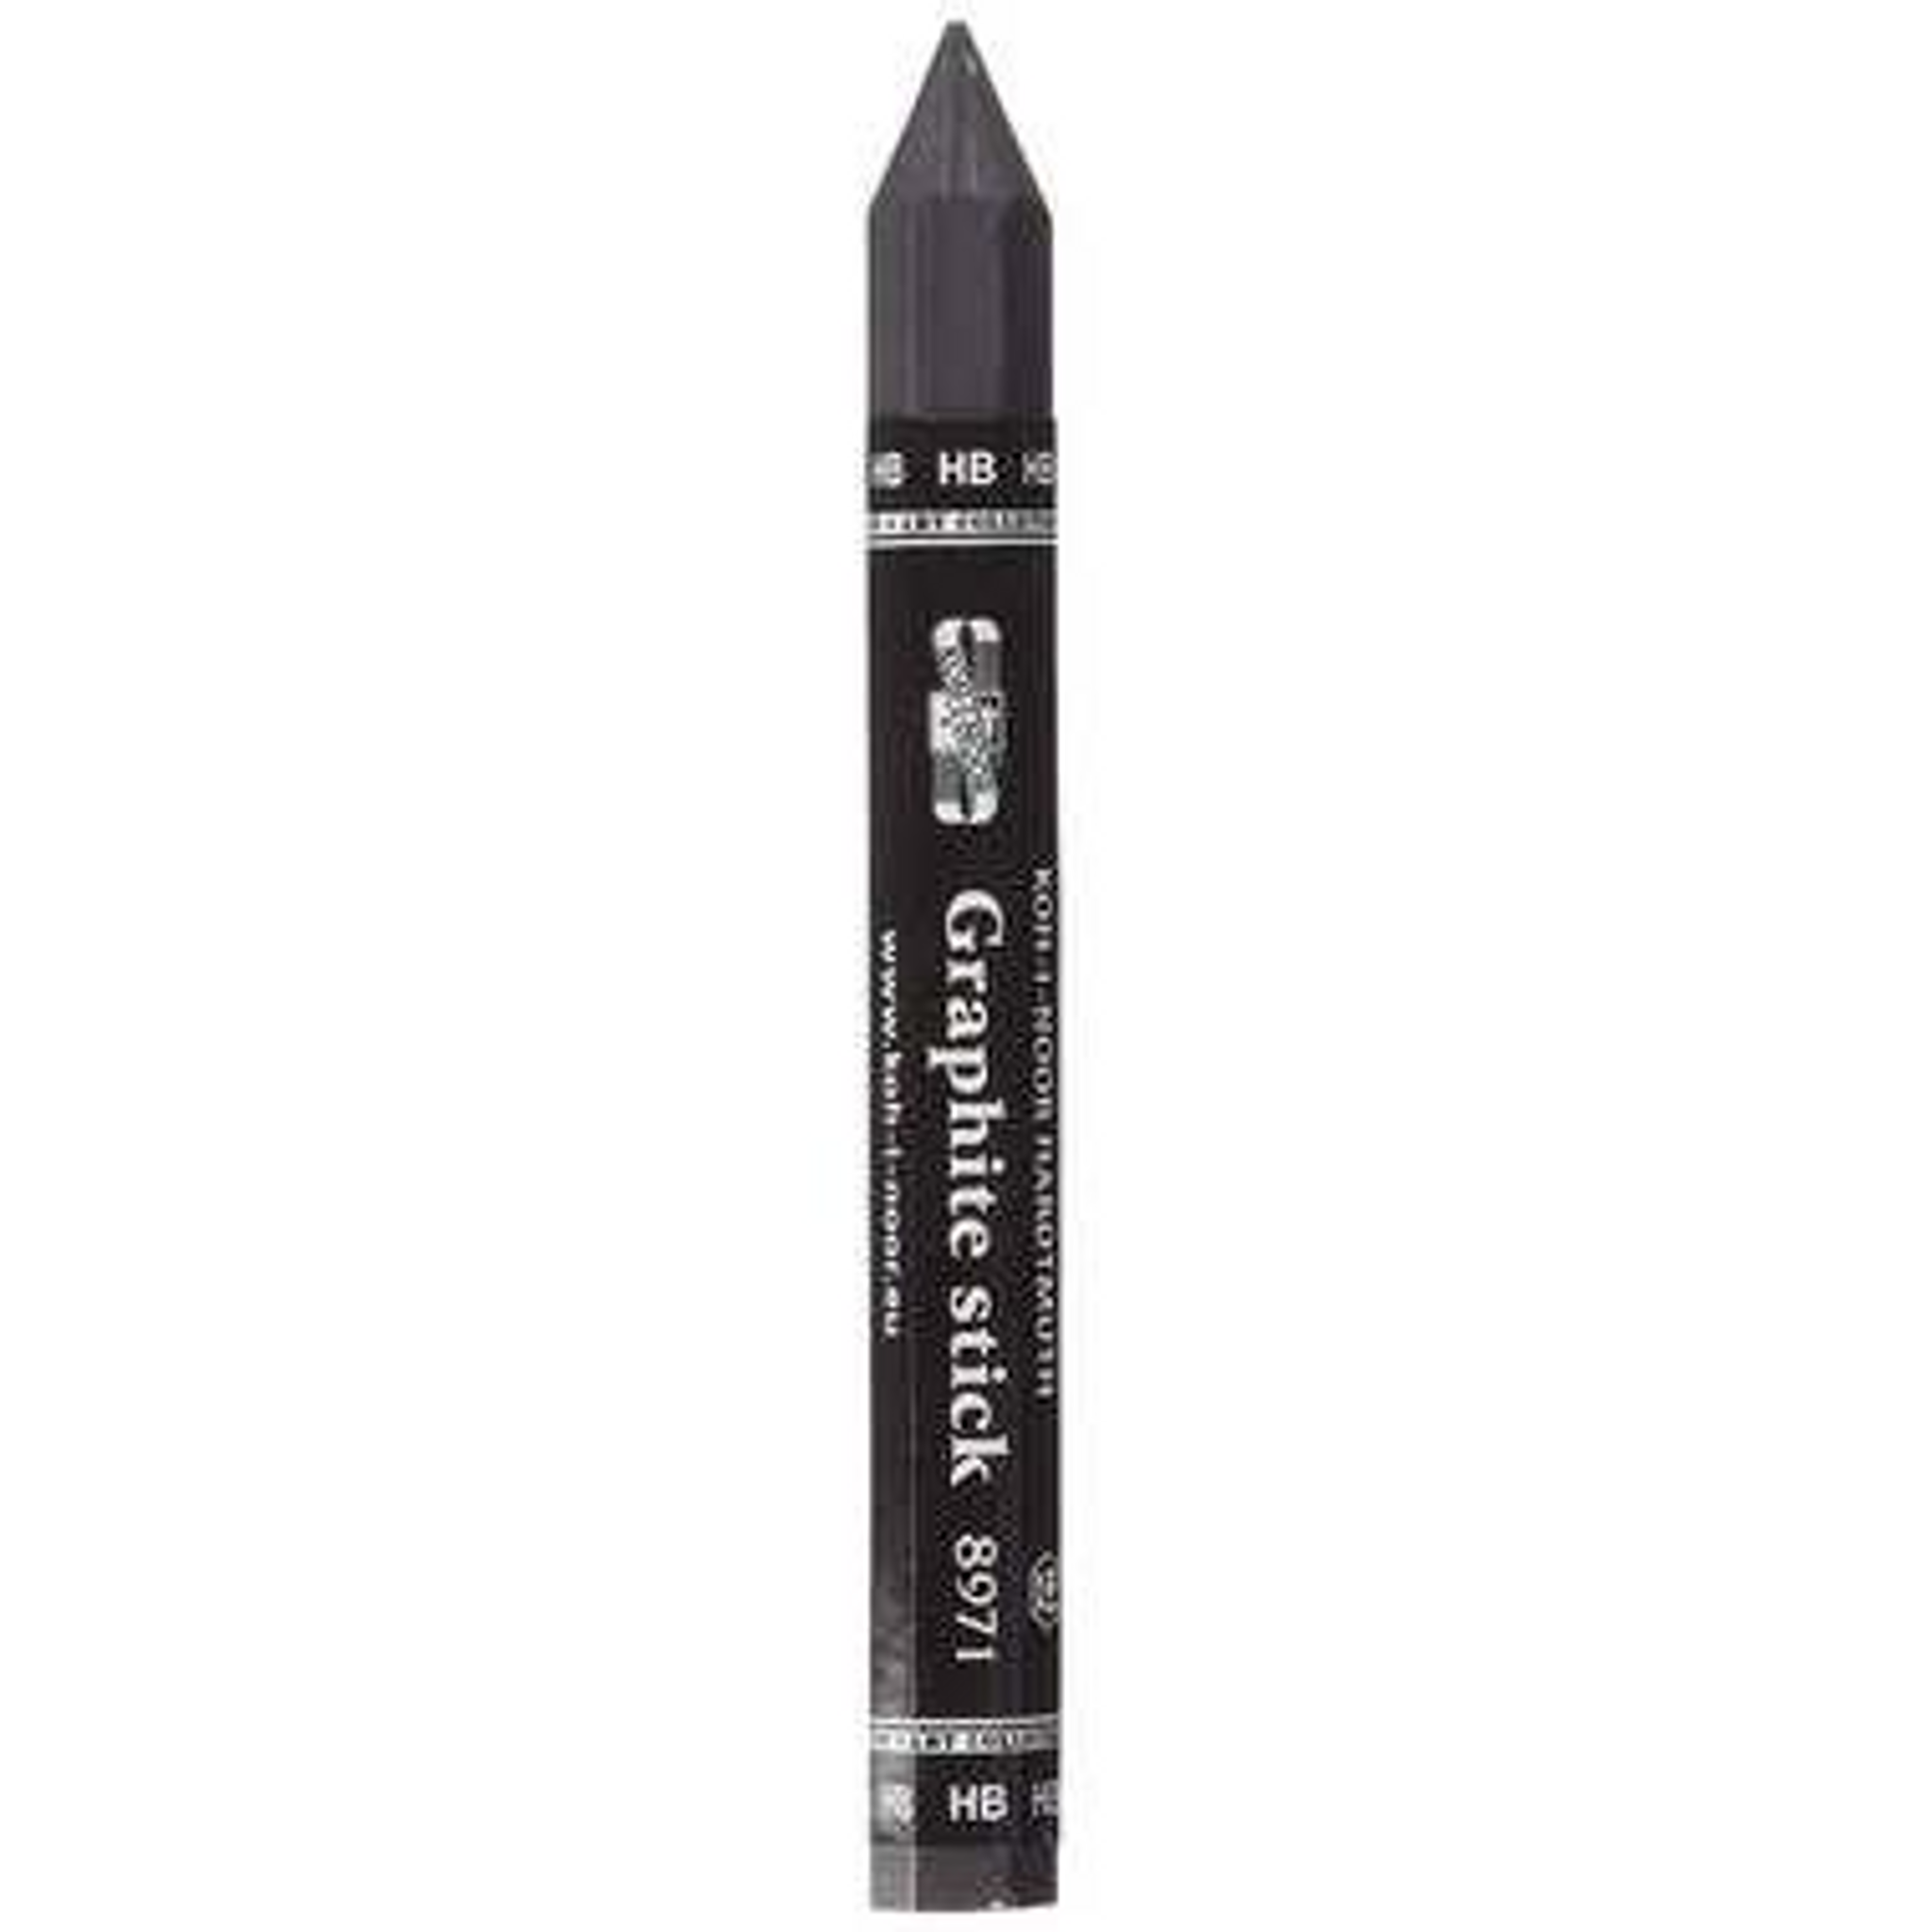 Koh-i-noor 6B graphite stick pencil